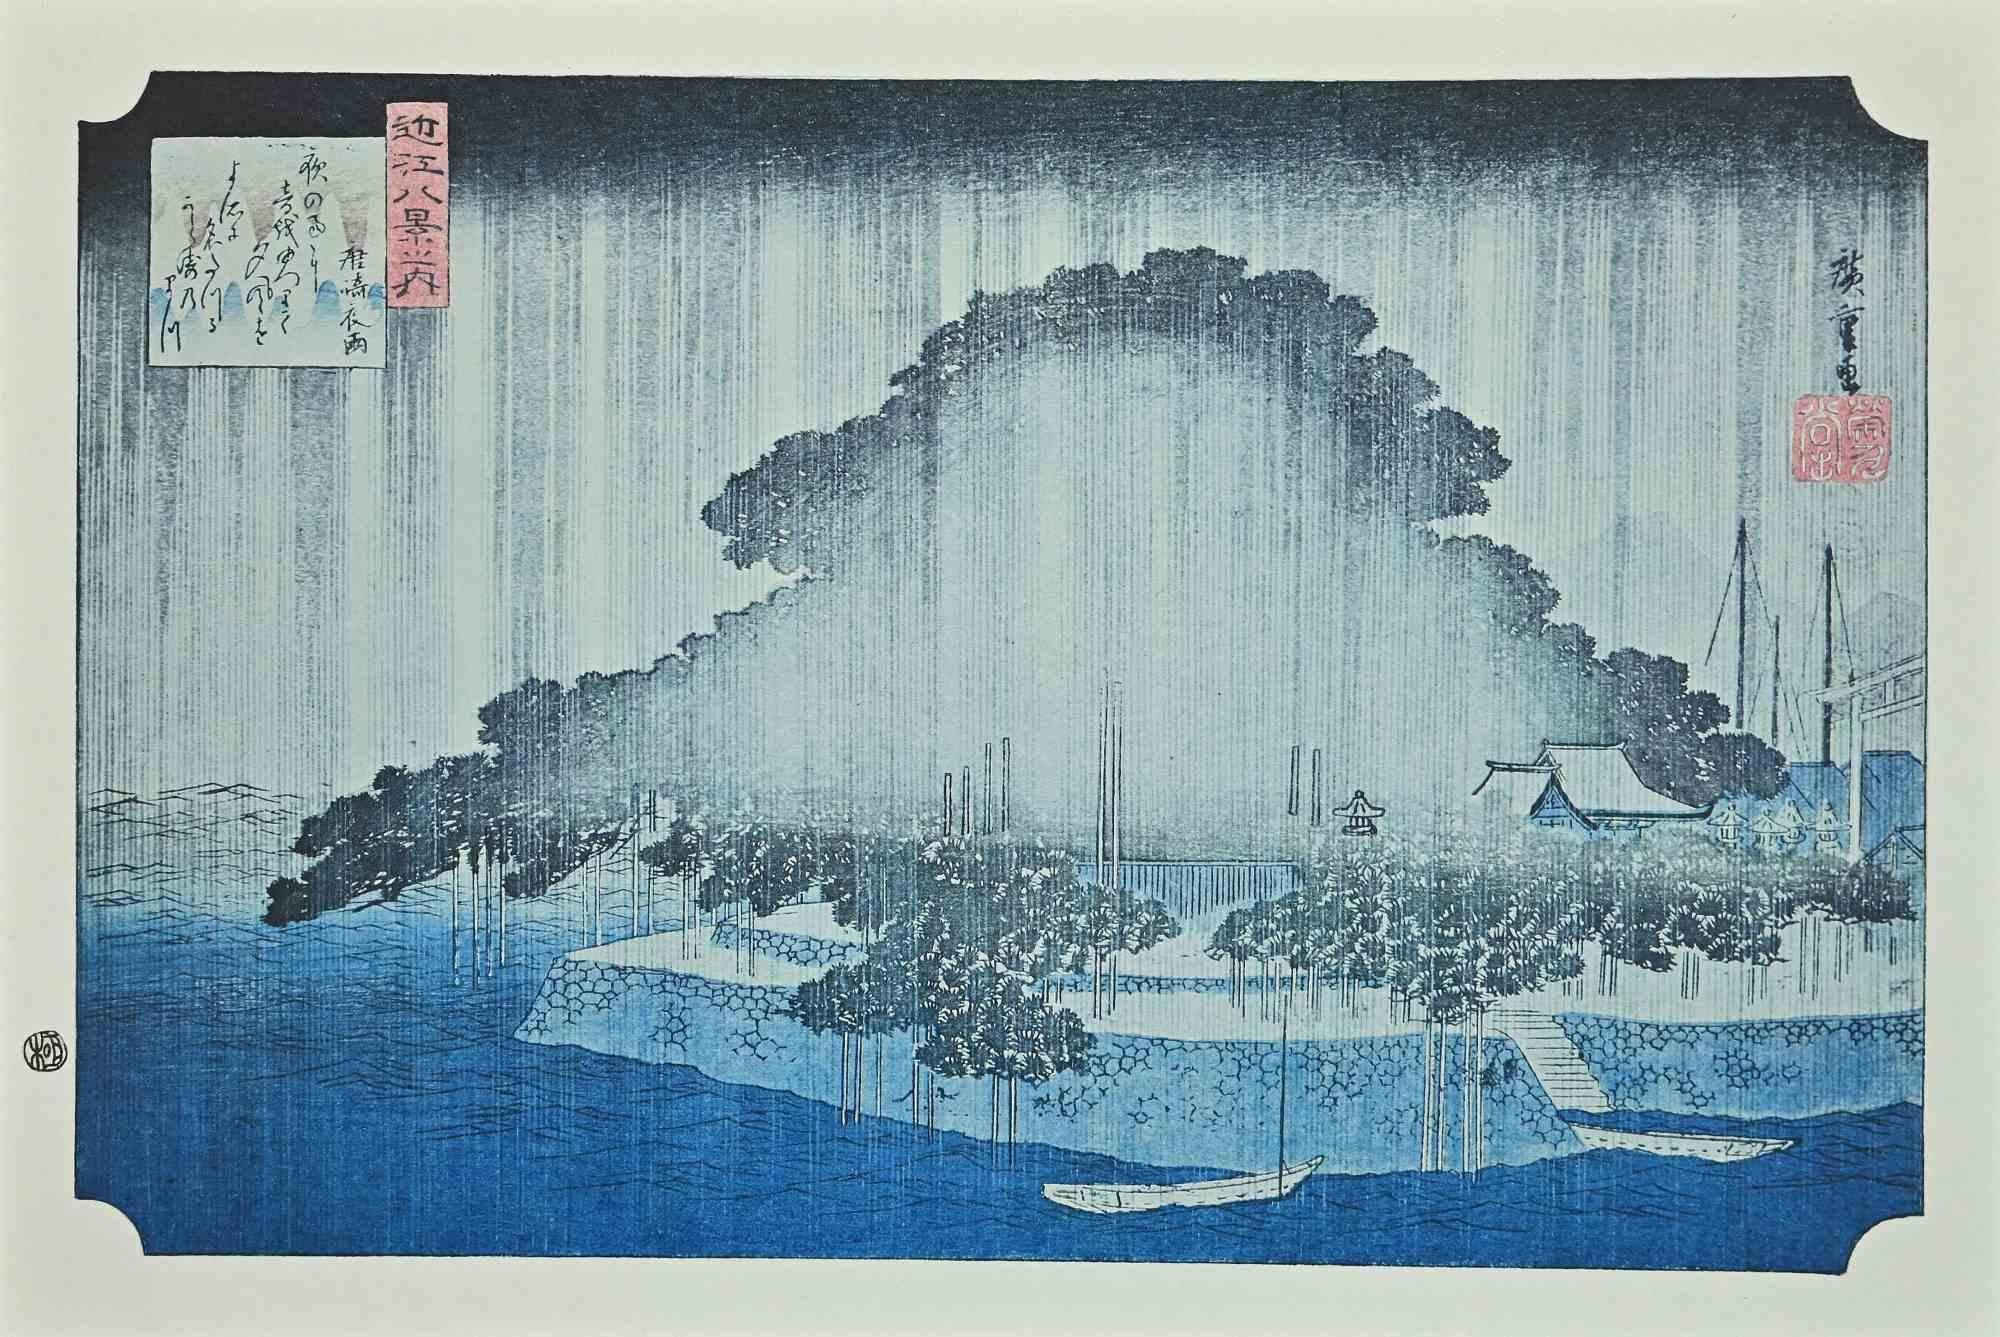 The Rain - Acht szenische Flecken in Oomi nach U. Hiroshige, 20. Jahrhundert